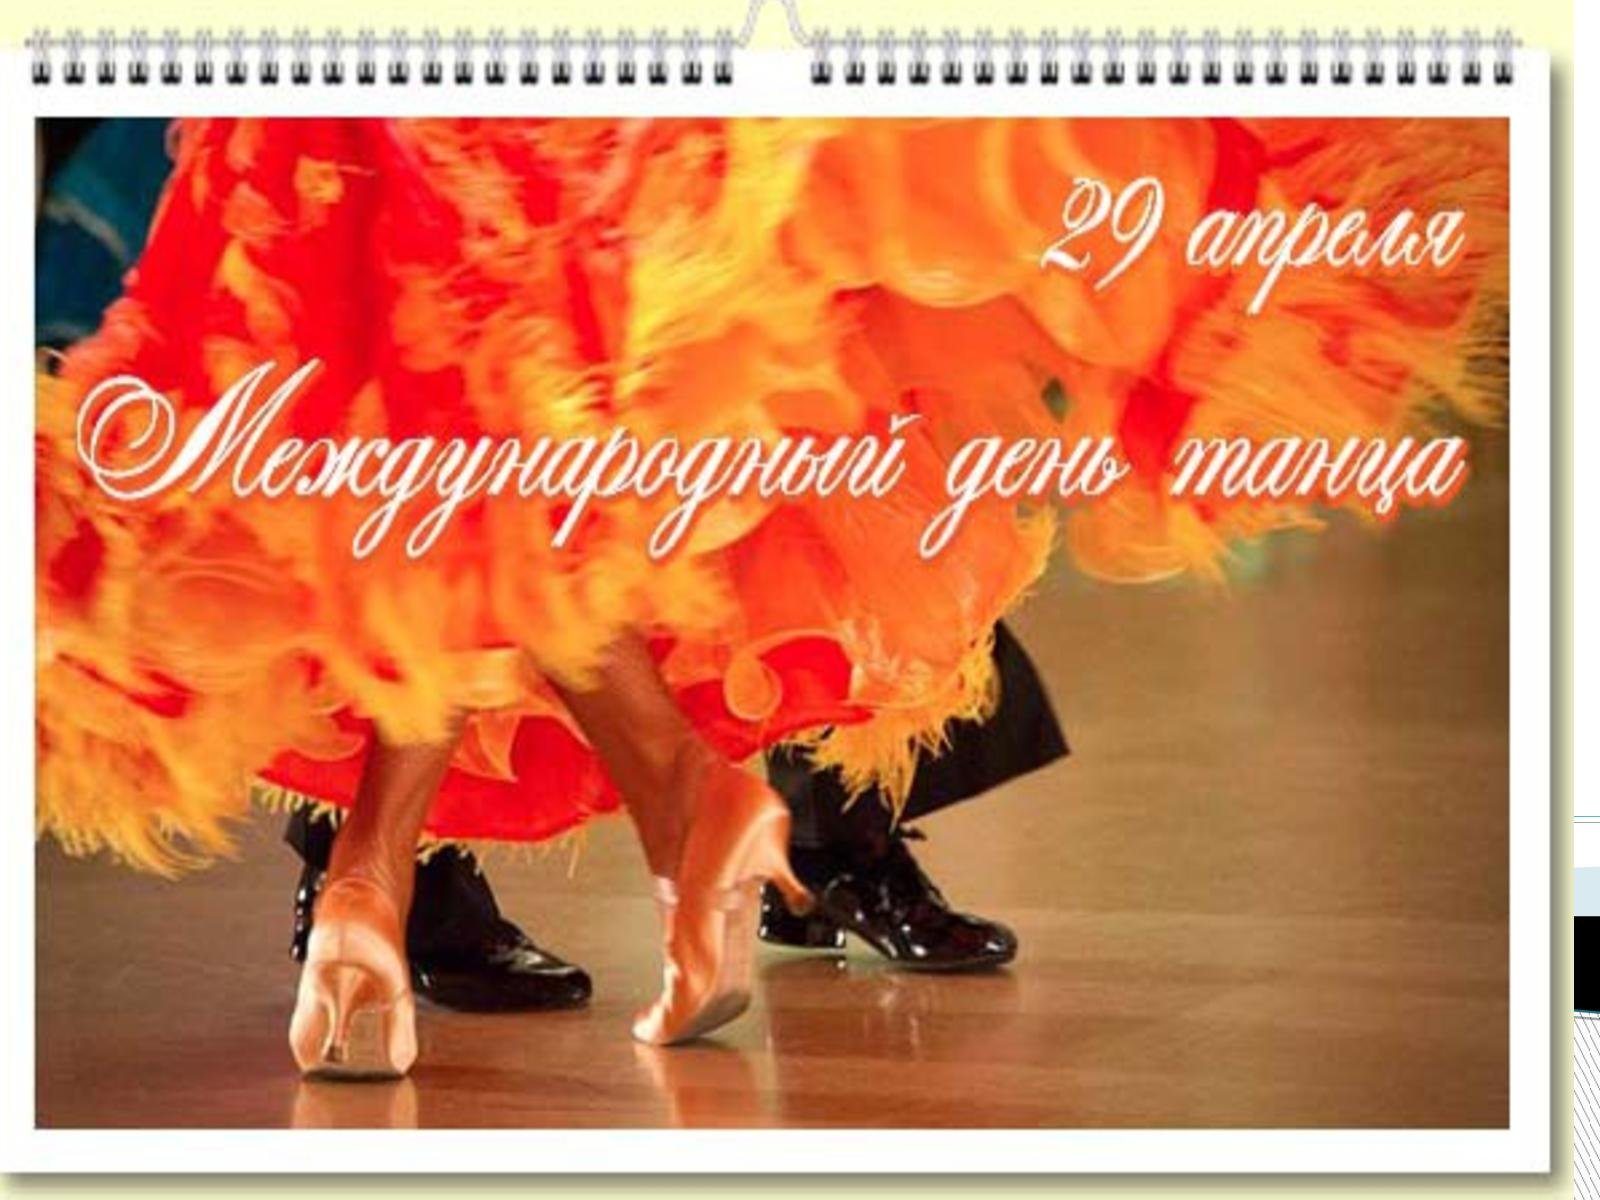 29 международный день танца. Международный день танца. Поздравить с днем танца. С днем танца поздравления. Открытки с международным днем танца.